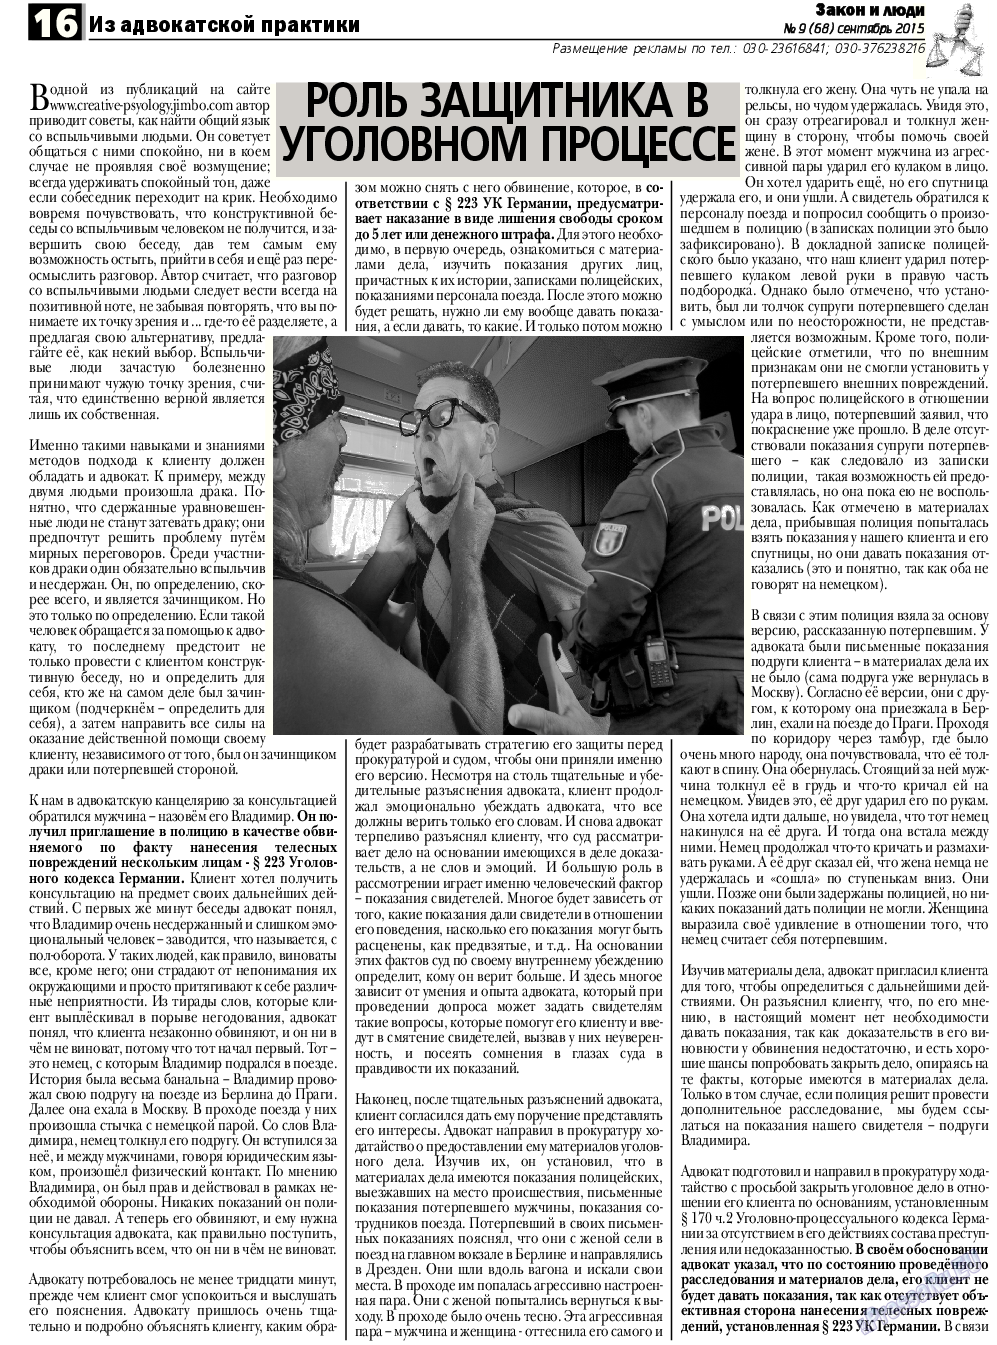 Закон и люди, газета. 2015 №9 стр.16